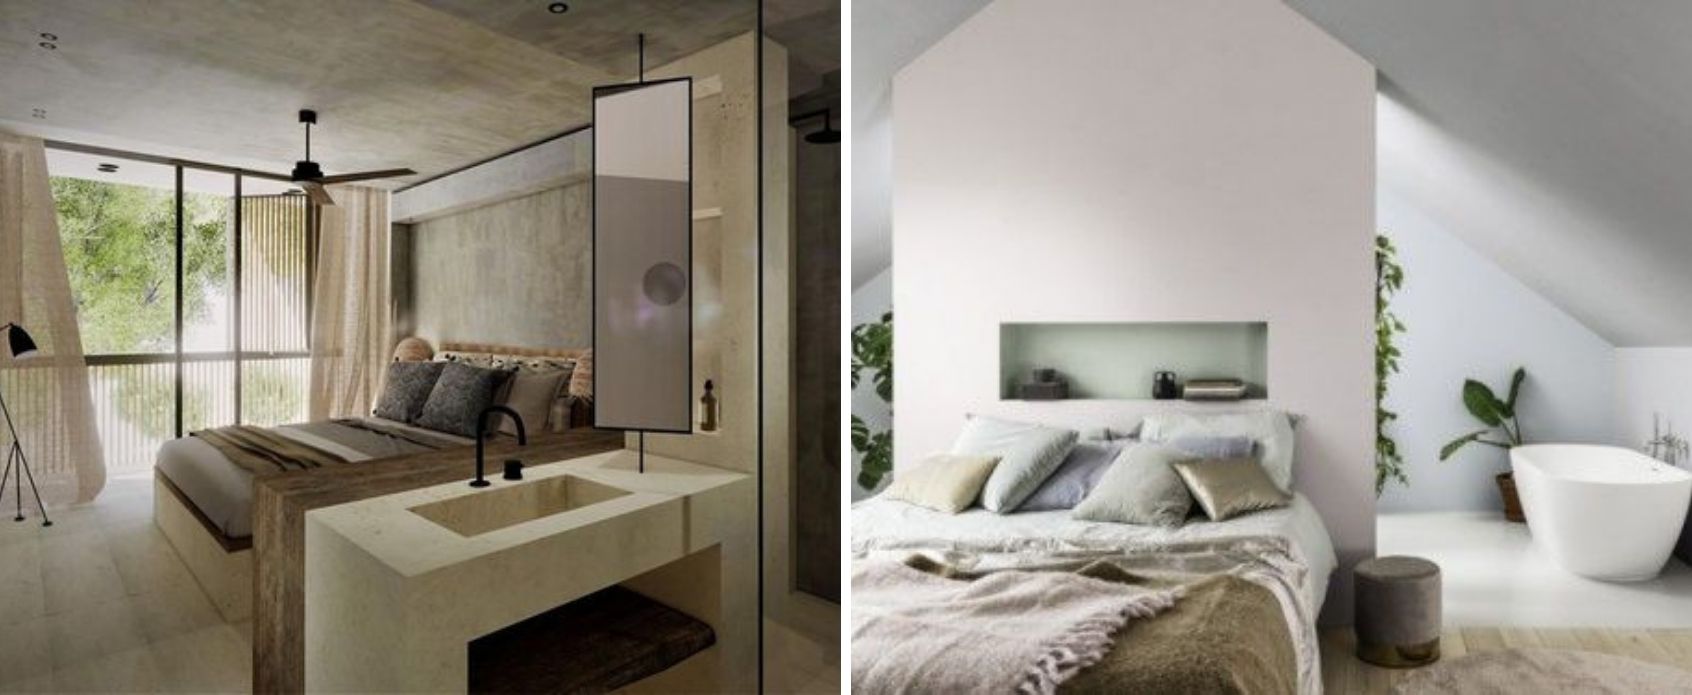 consejos_baño_integrado_dormitorio_diseño_interiorismo_decoración_trucos-04